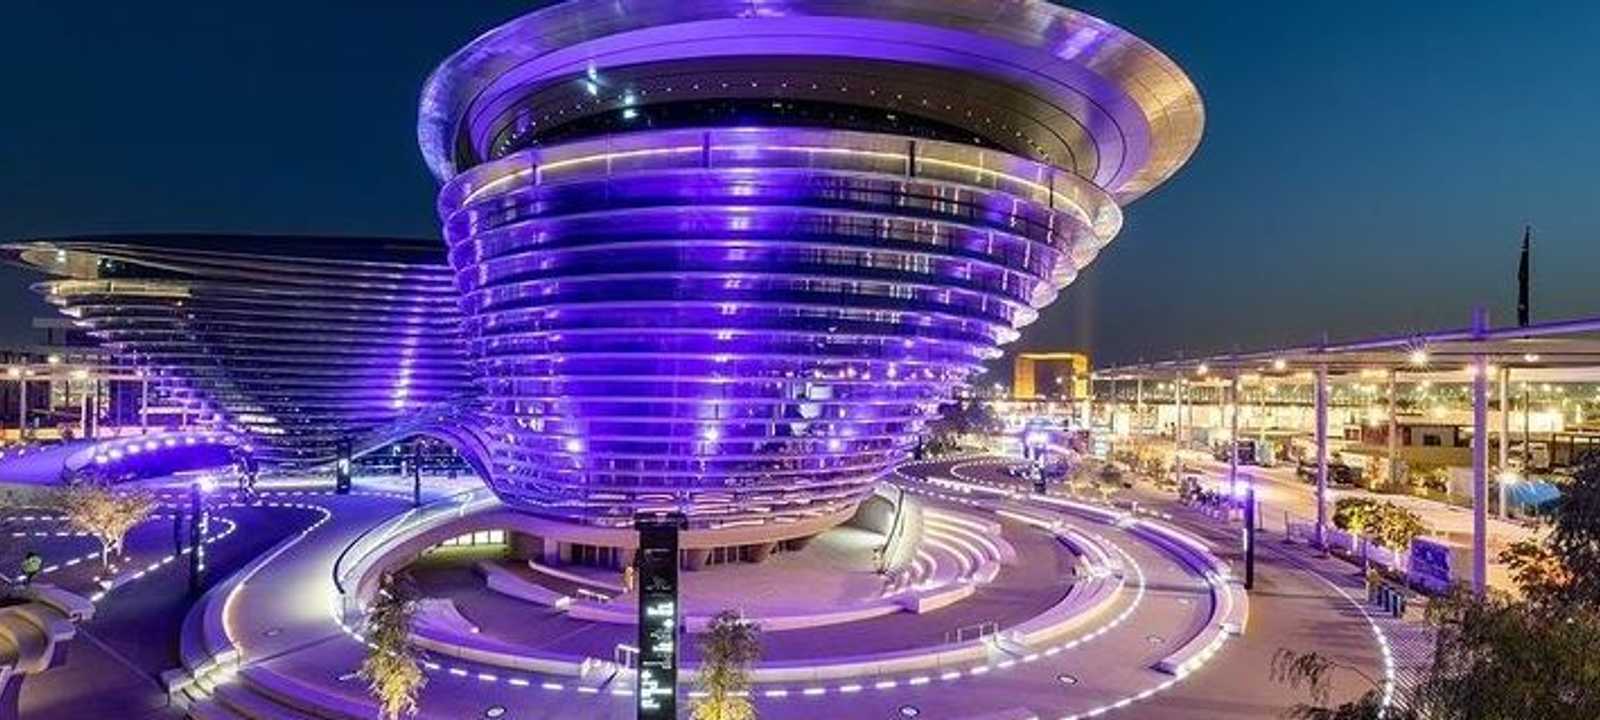 إكسبو دبي 2020 الحدث العالمي الأبرز منذ بداية جائحة كورونا